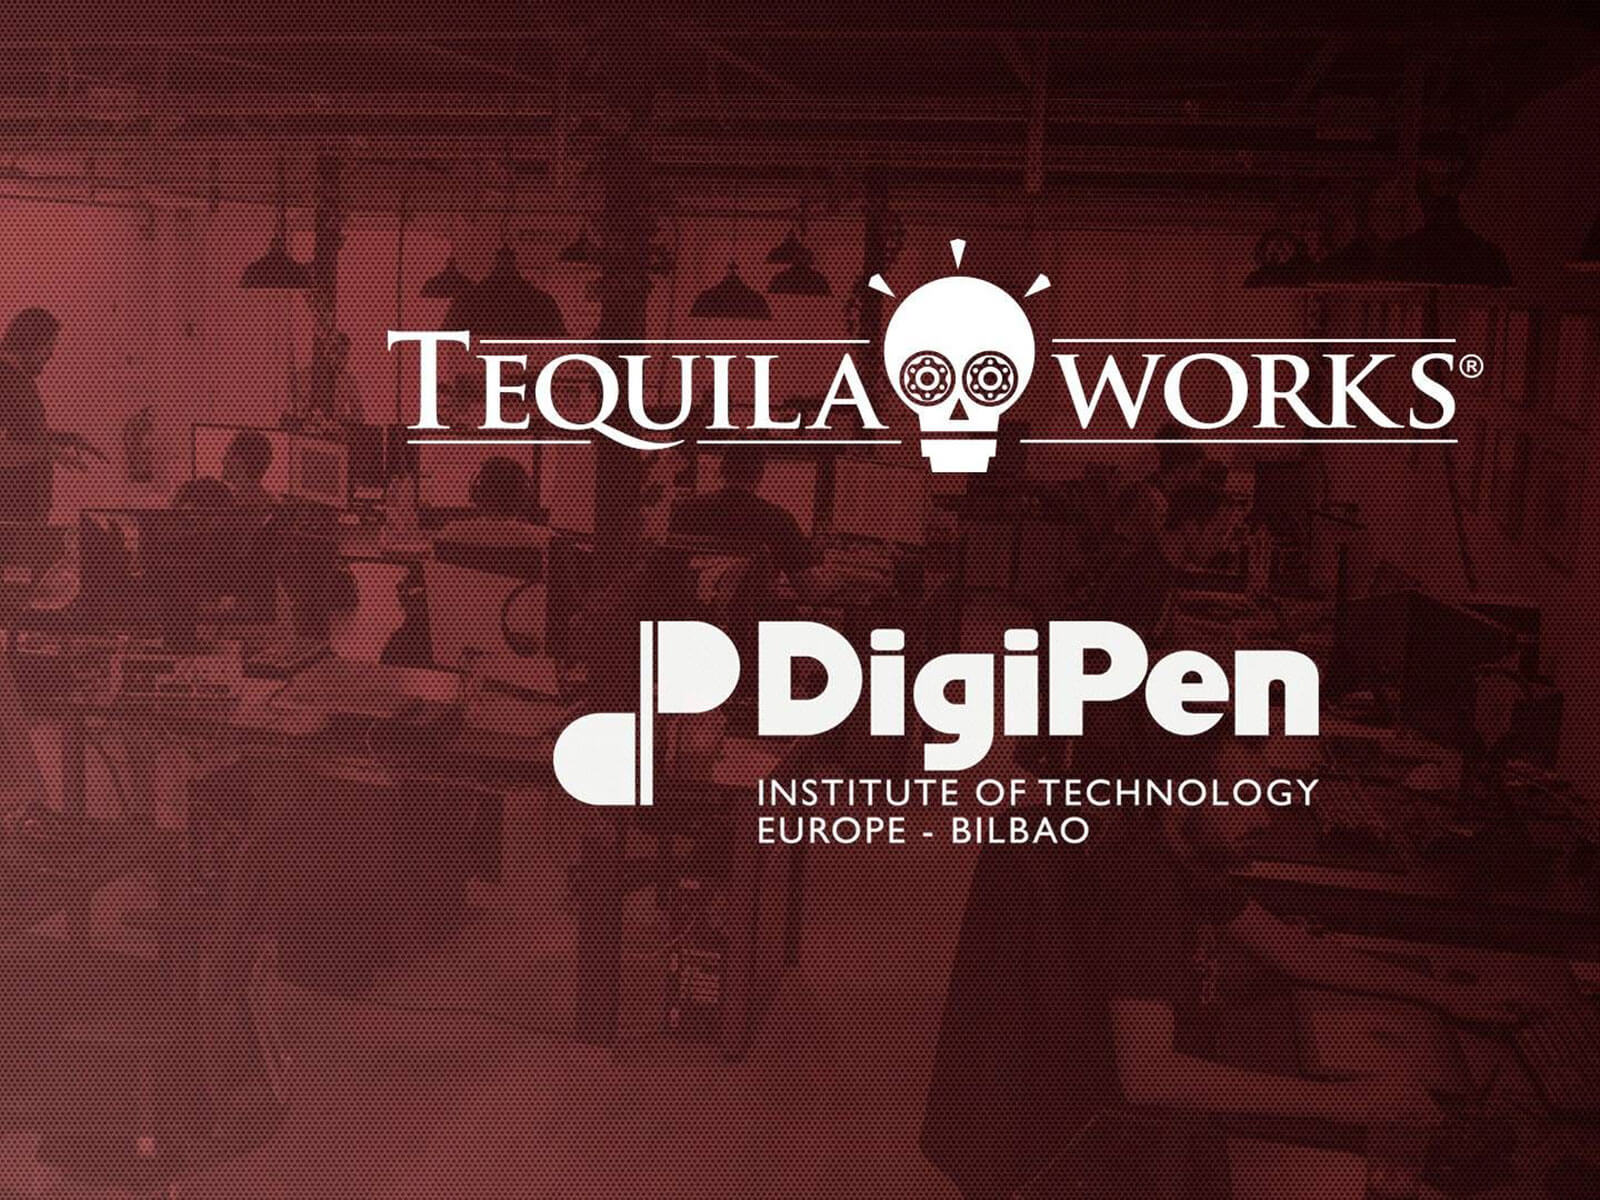 Los logos de Tequila Works y DigiPen impresos sobre la foto de un equipo de desarrolladores de juegos trabajando